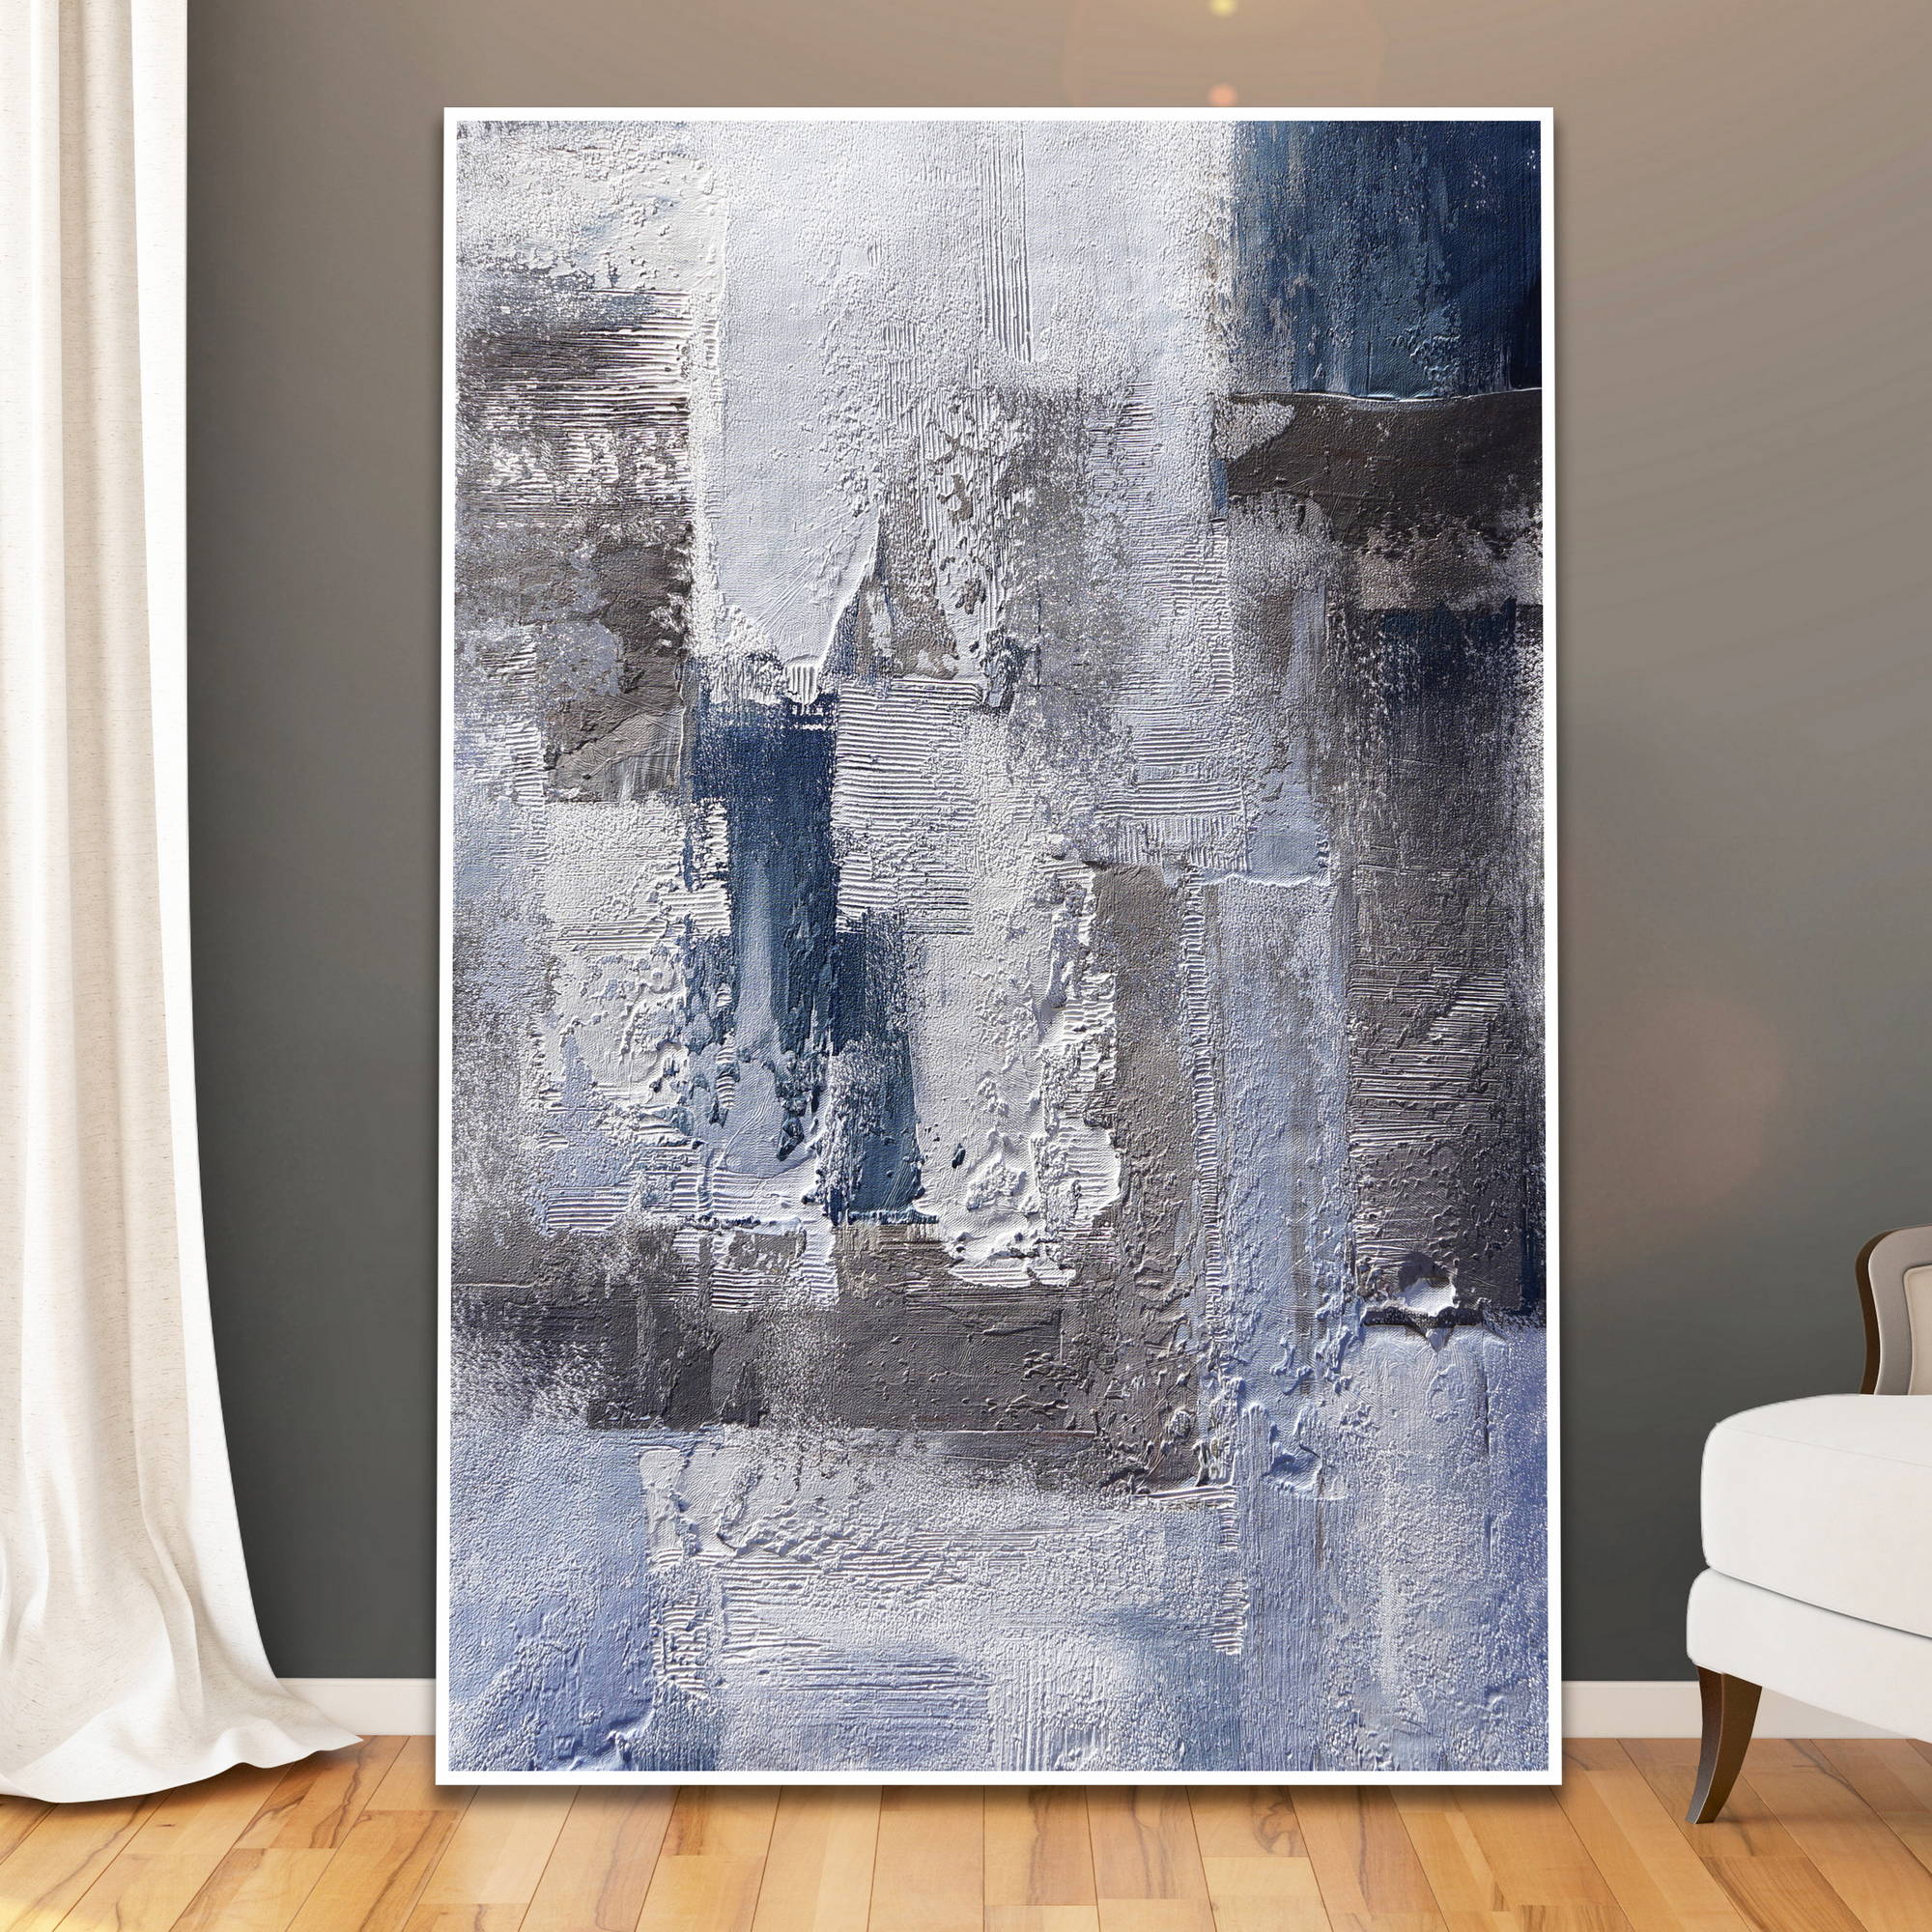 Dipinto astratto con texture pronunciate in blu e grigio